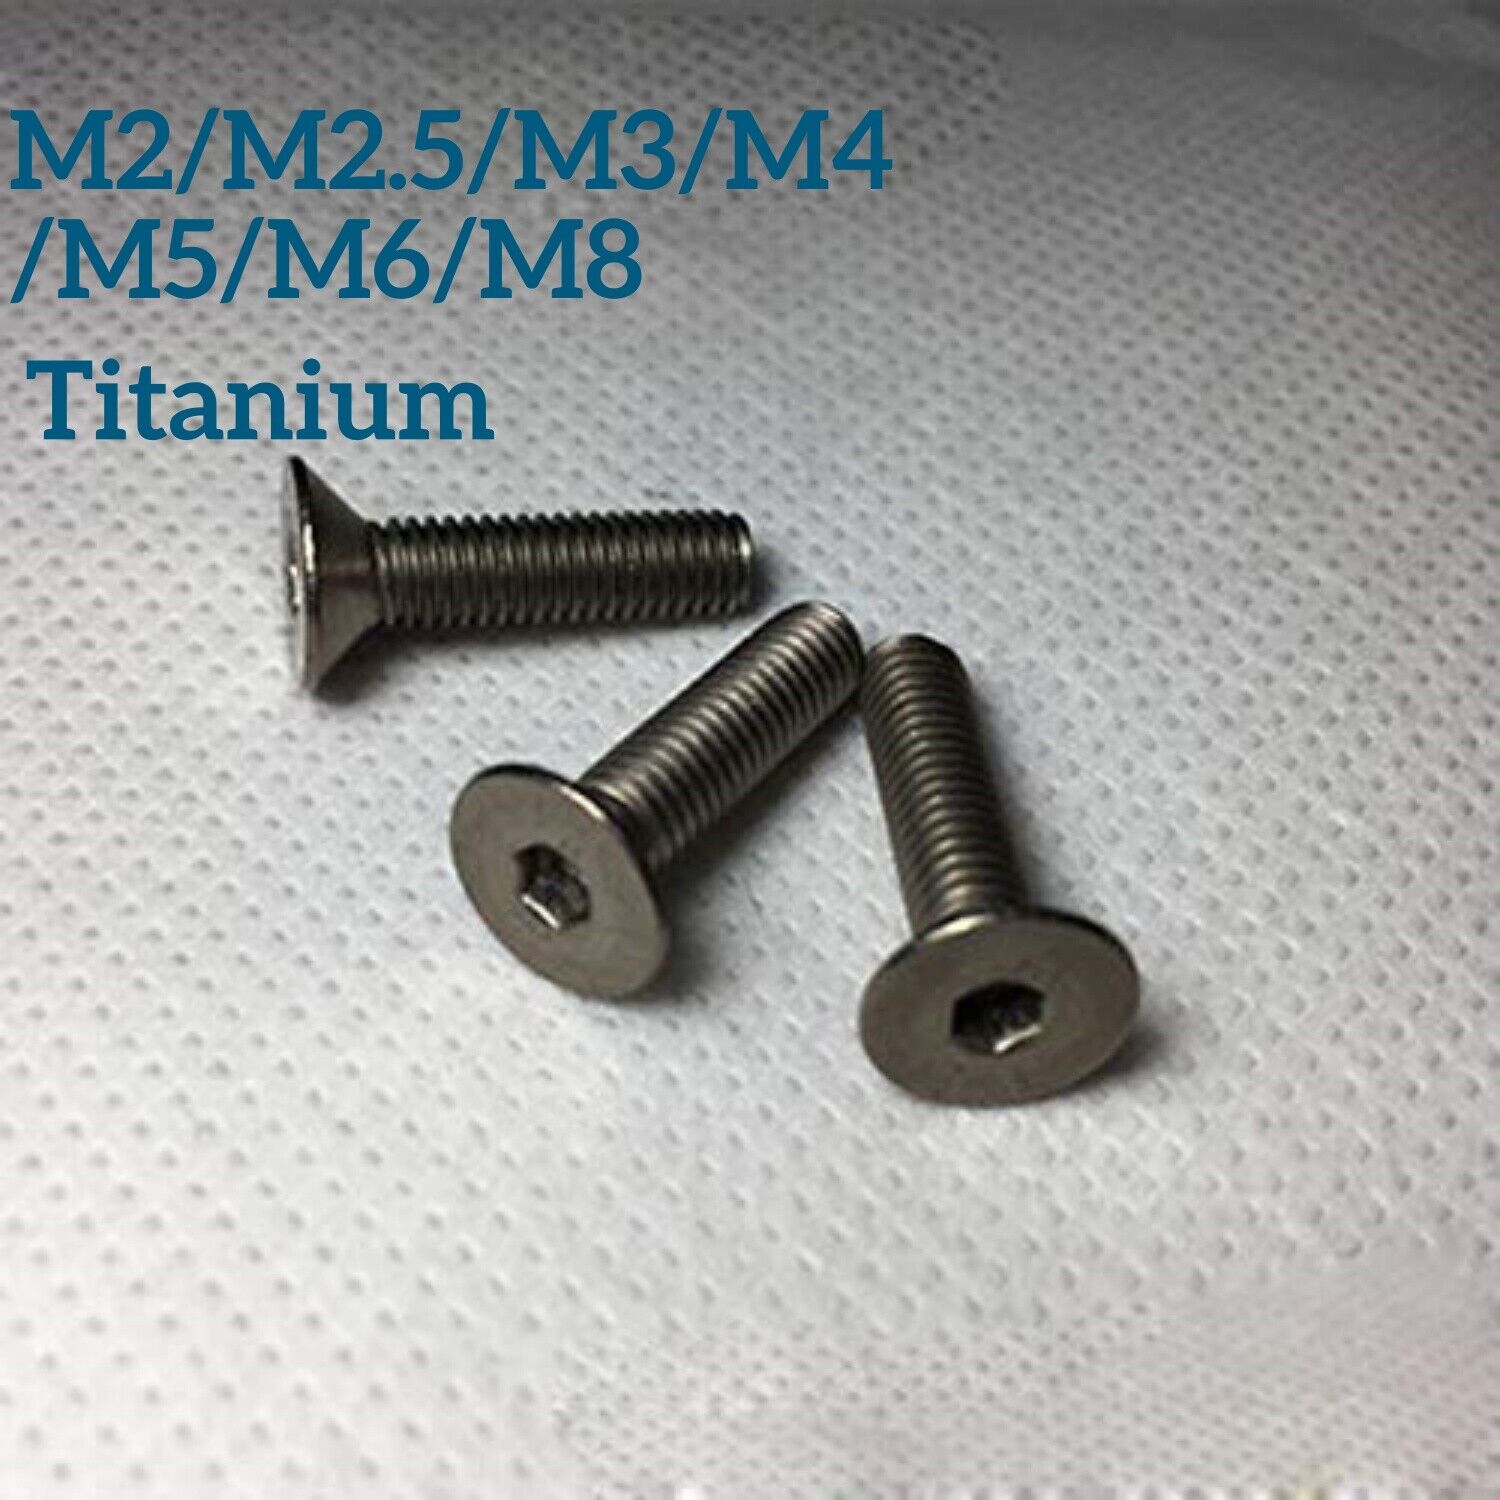 M2 M2.5 M3 M4 M5 M6 M8 Hex Socket Bolt Countersunk Flat Head Screws Titanium TA2